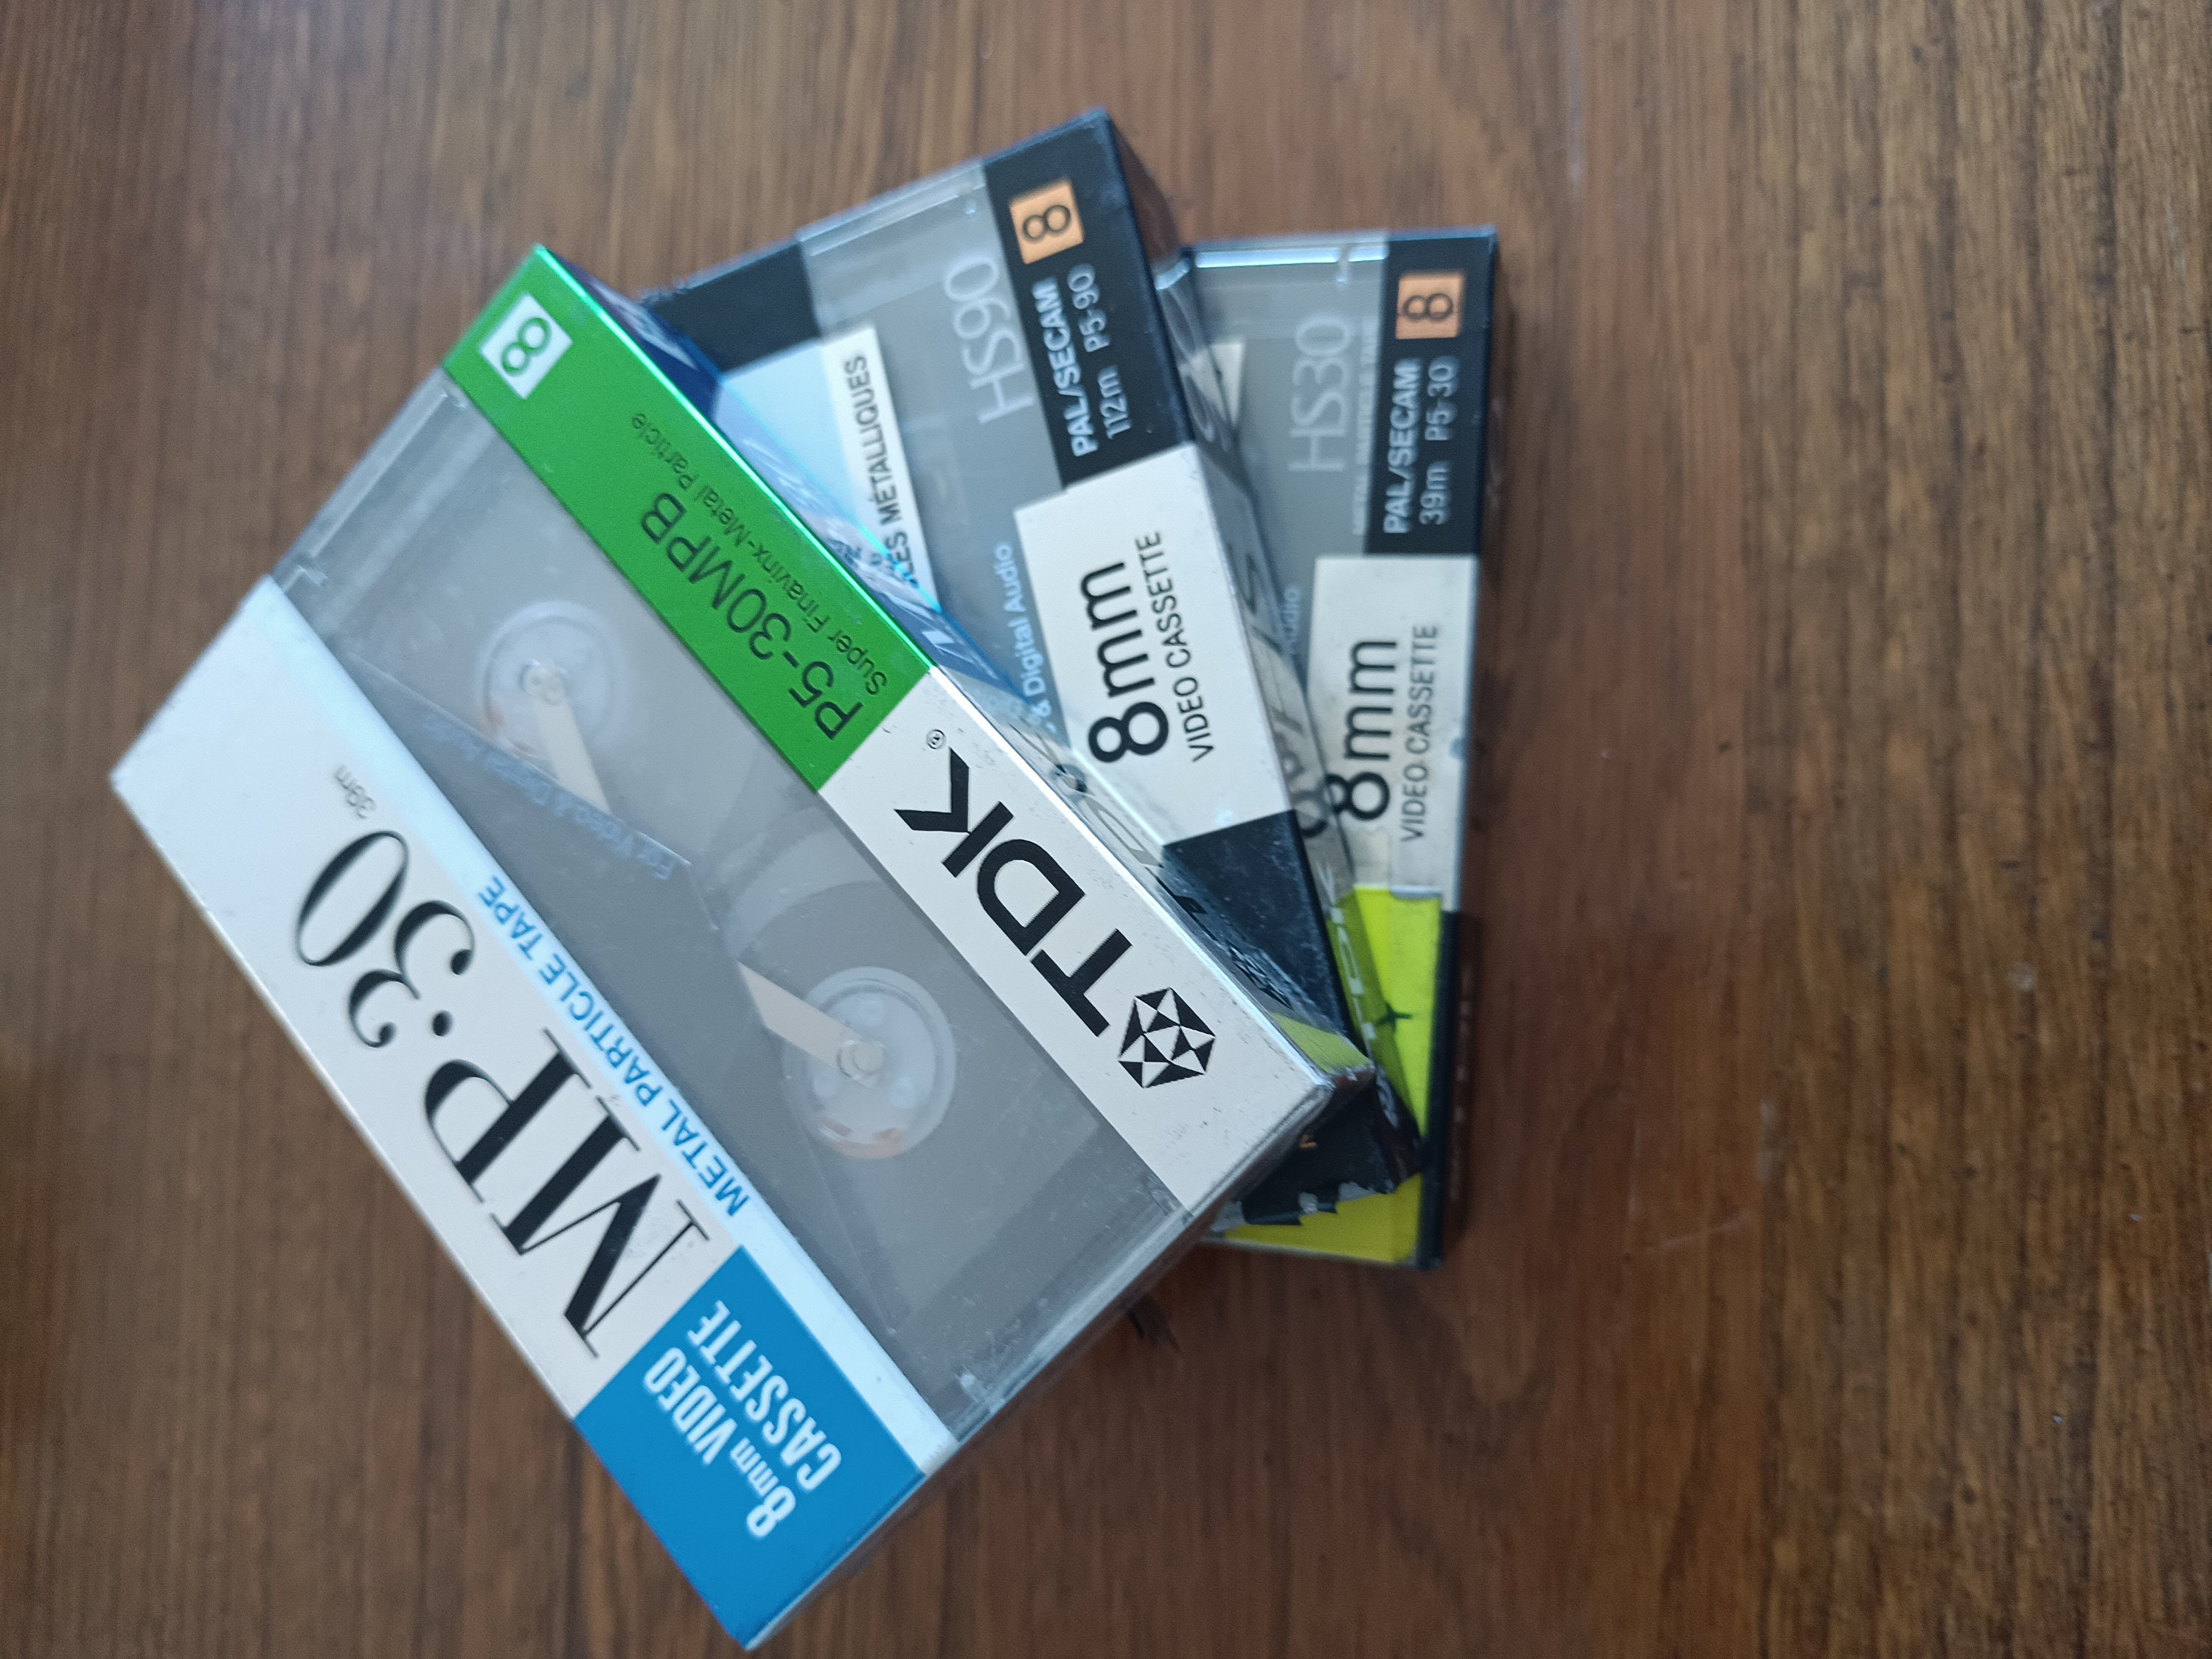 Cassette cassette de caméscope vidéo Sony 8 x TDK 8 mm HS90 PAL/SECAM  vintage